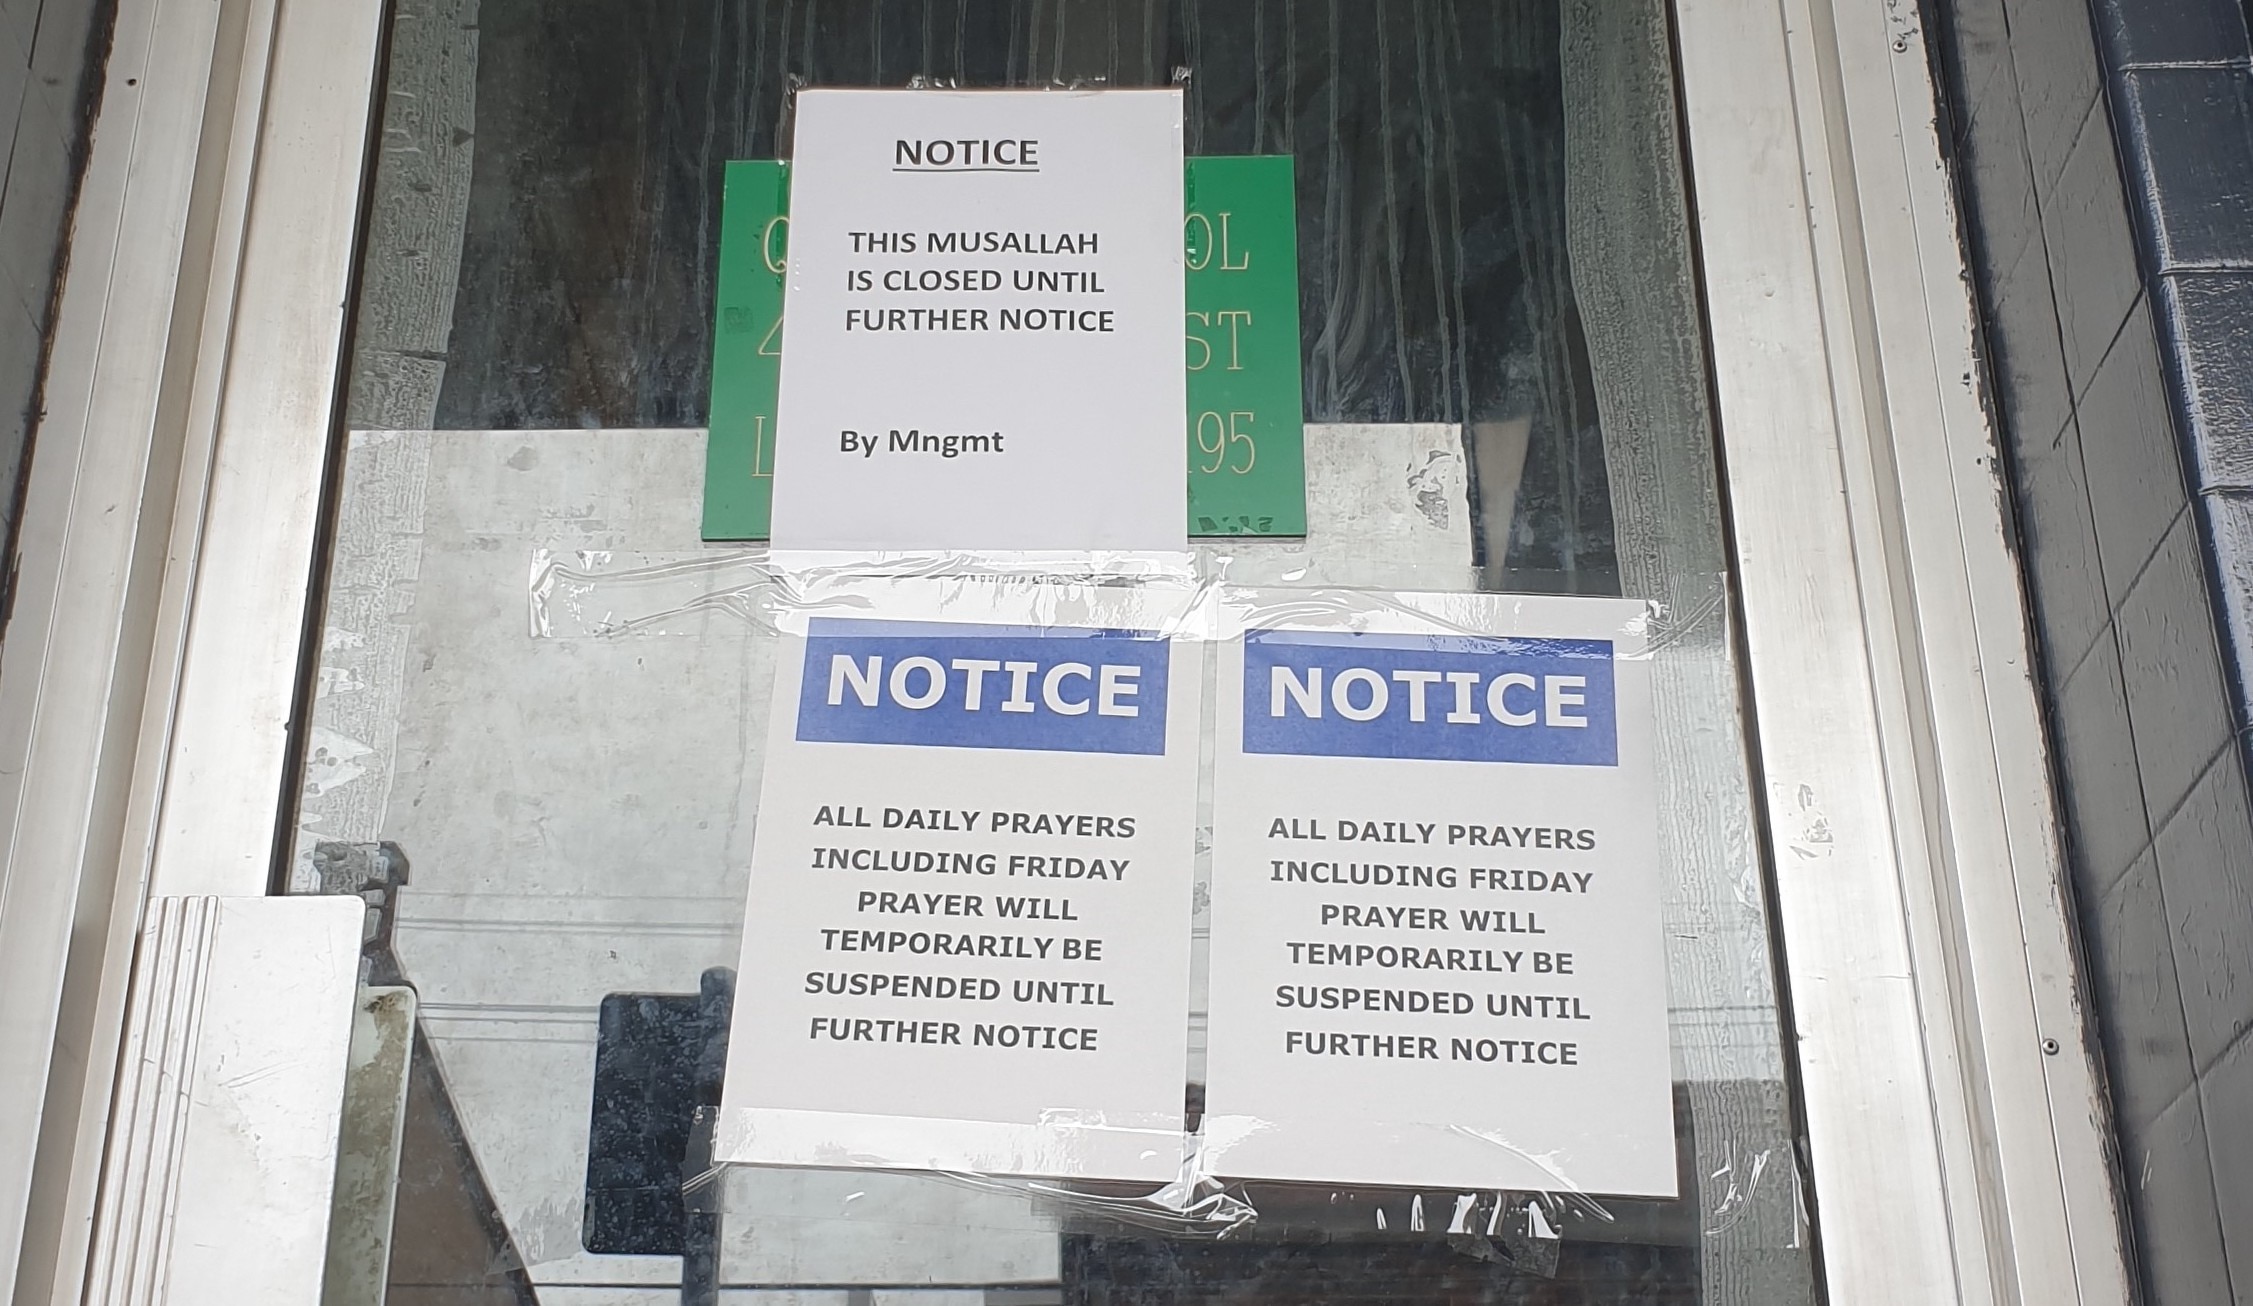 لافتة علي مسجد لاكمبا تعلن عن ايقاف صلوات الجماعة